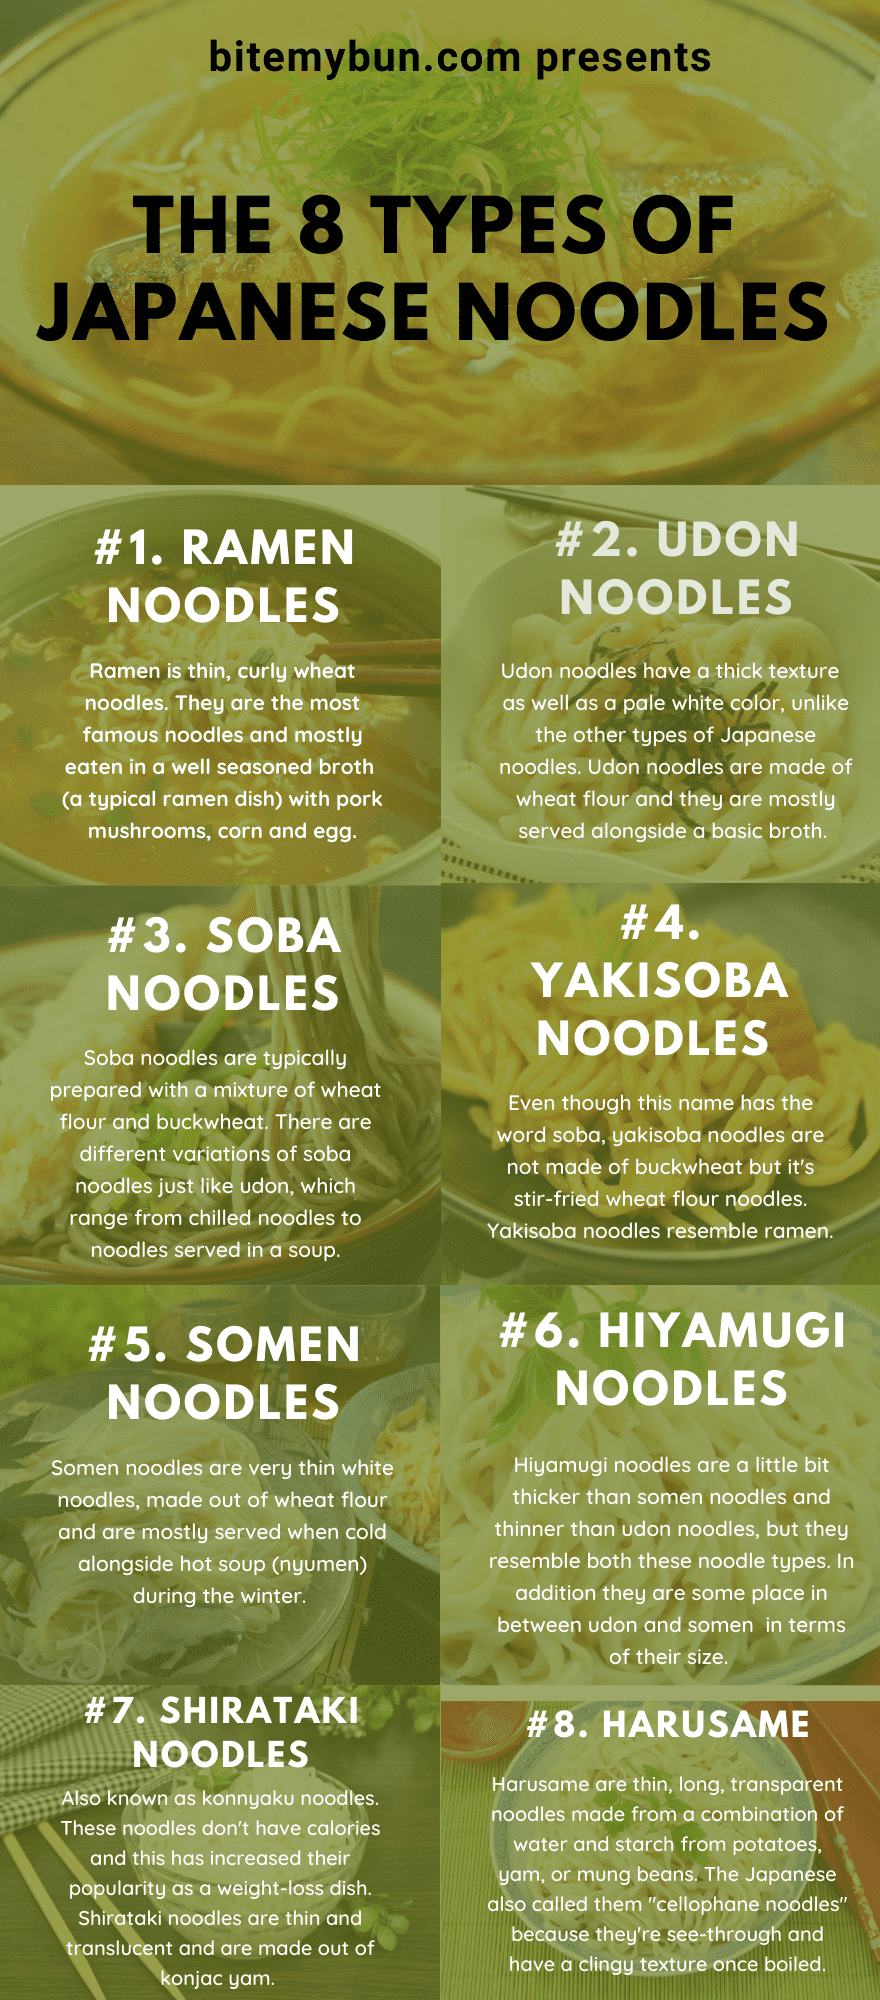 8 dị iche iche nke Japanese noodles